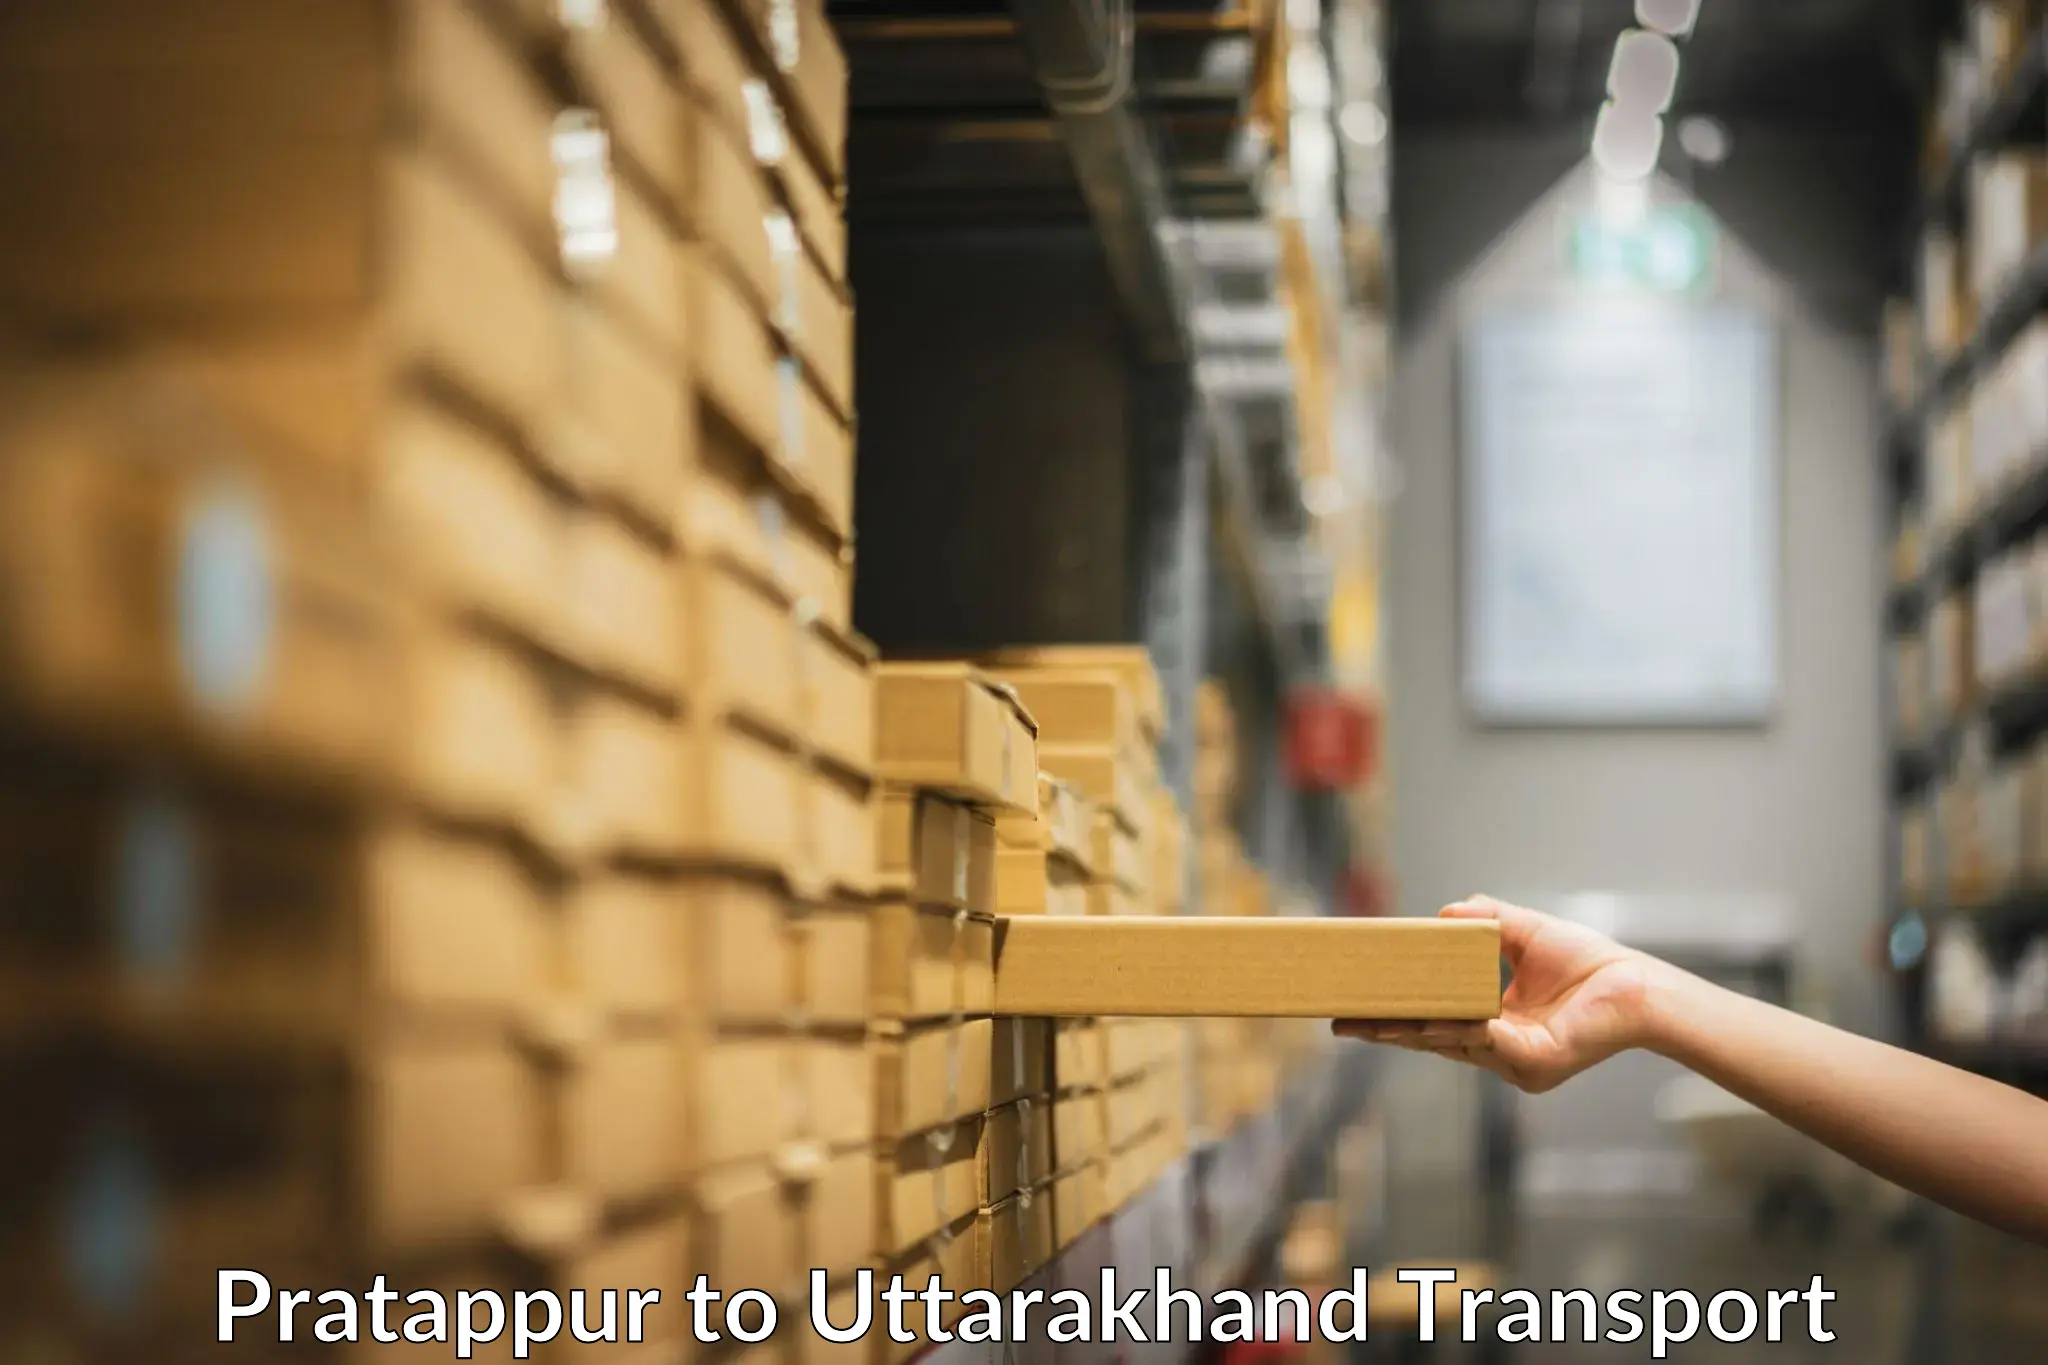 Furniture transport service Pratappur to Gopeshwar